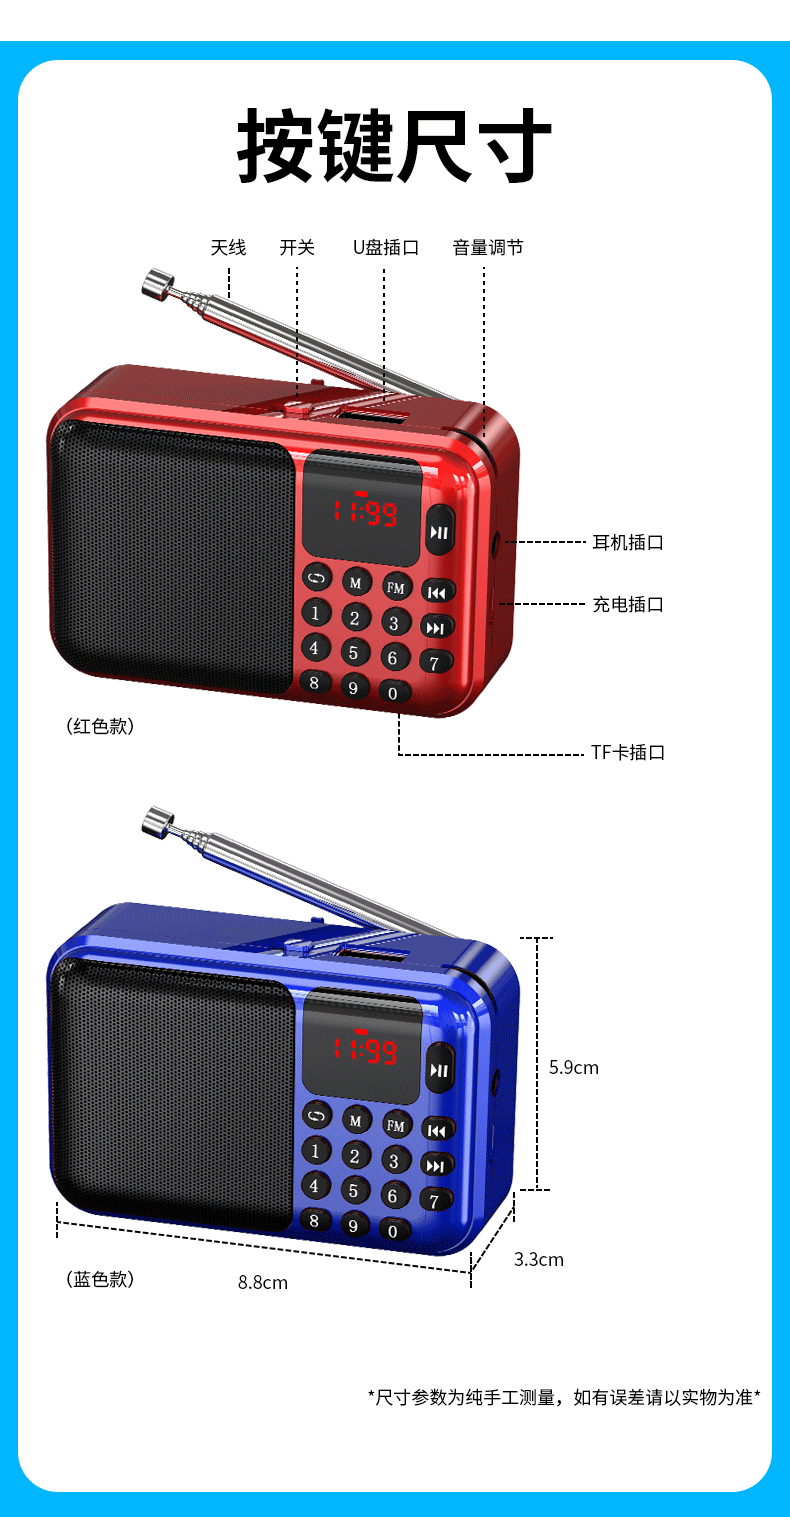 索爱（soaiy）SA-C28 老人收音机充电式插卡迷你多功能蓝牙小音响便携式MP3随身听小型戏曲播放器 红色